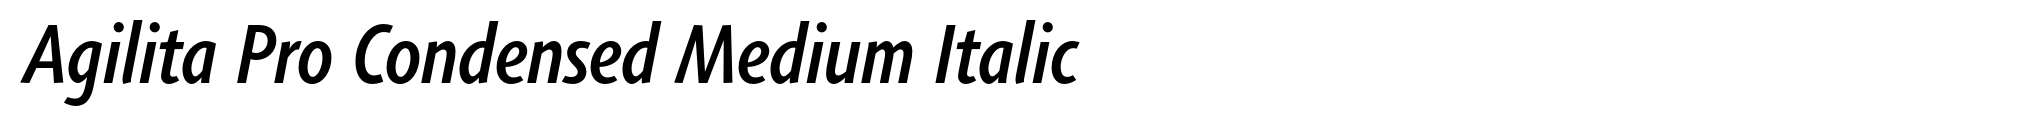 Agilita Pro Condensed Medium Italic image